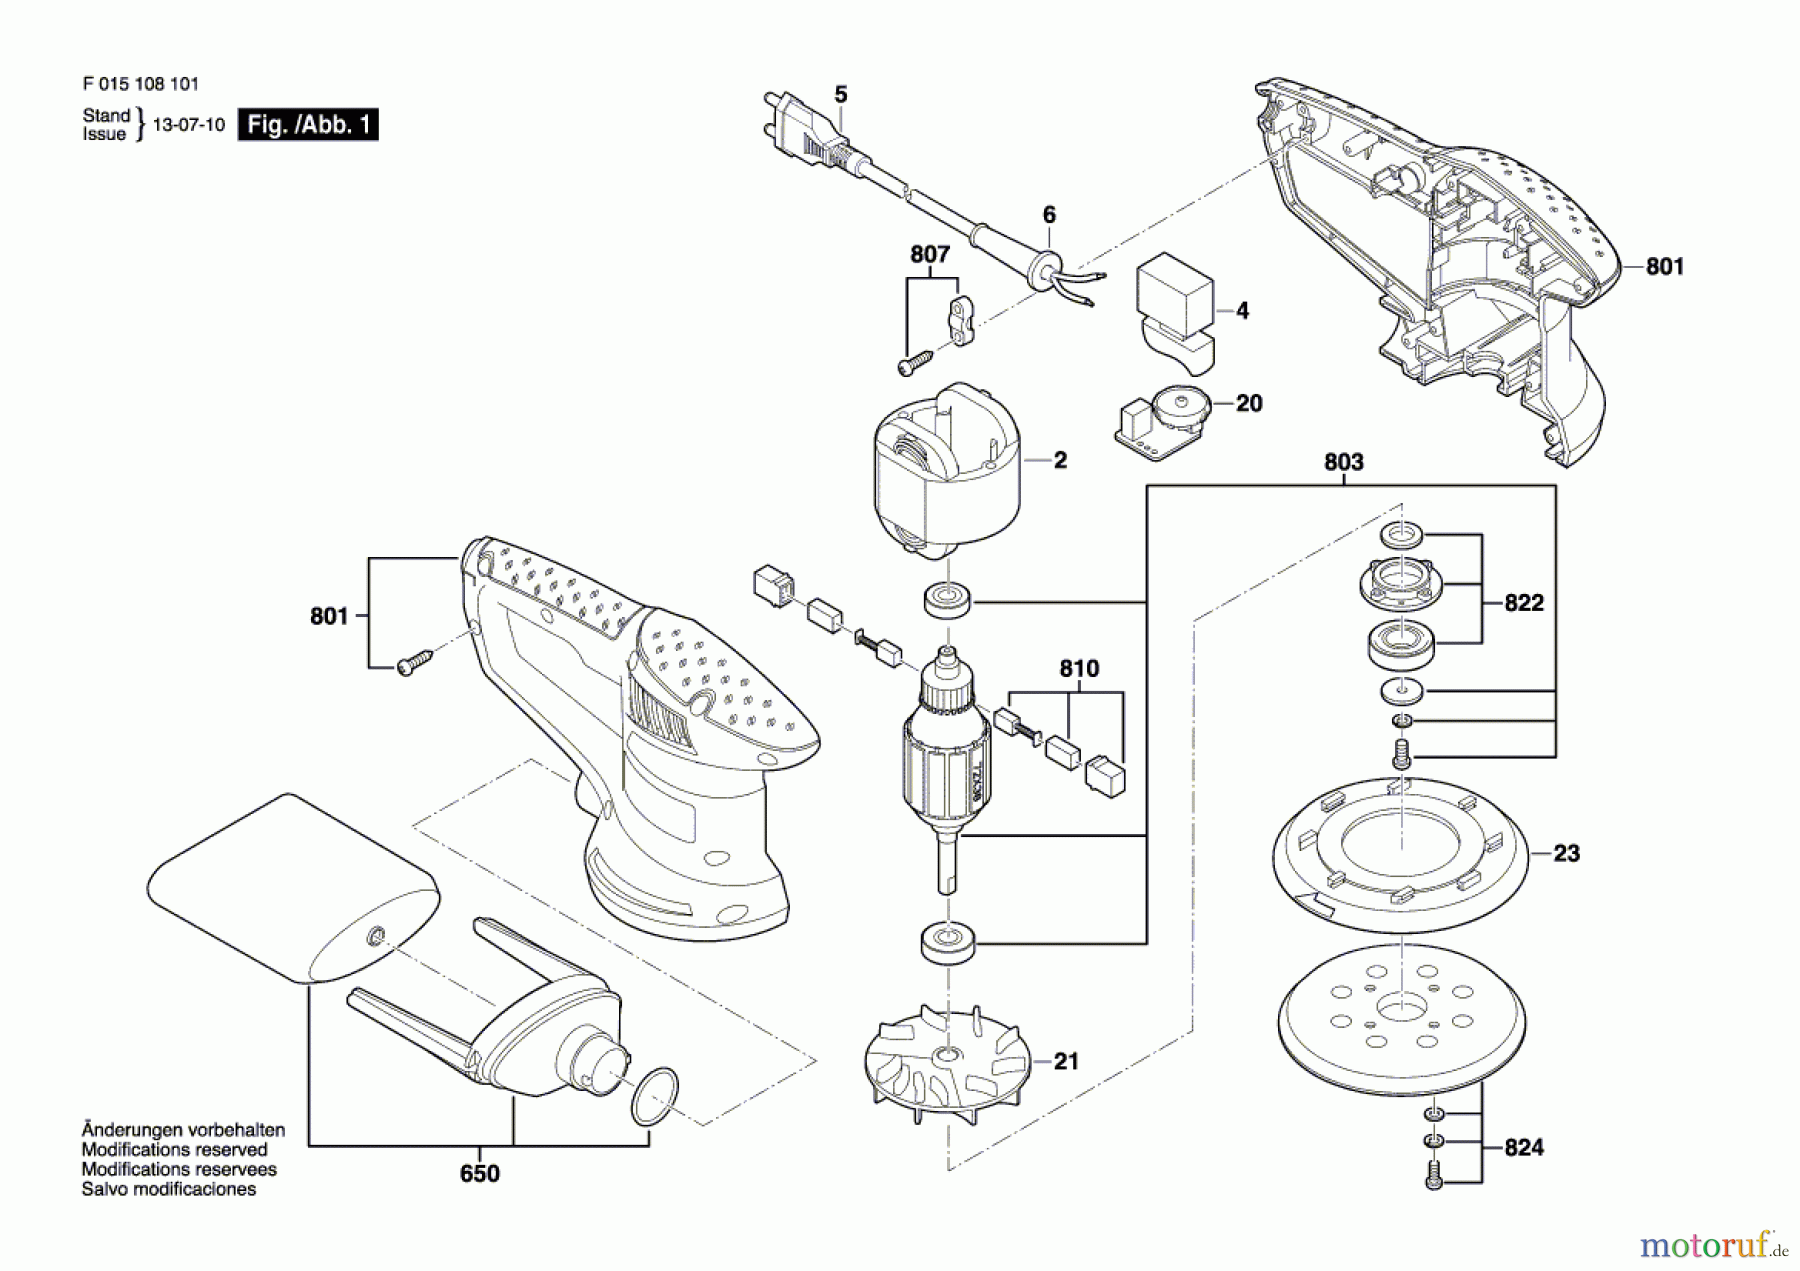  Bosch Werkzeug Exzenterschleifer 1081 Seite 1